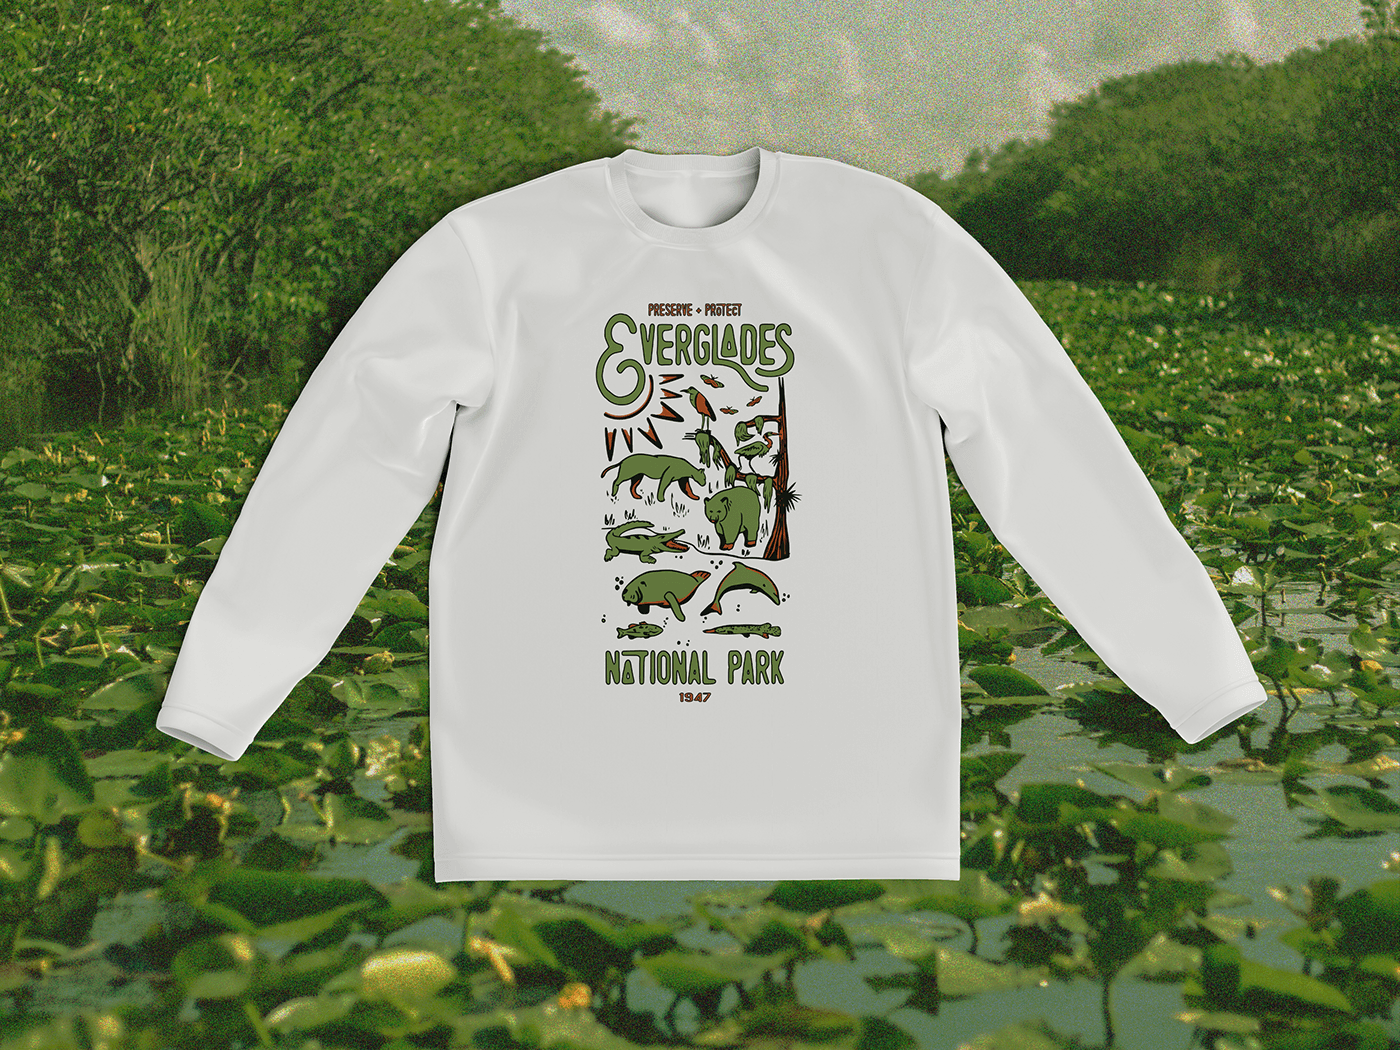 Tshirt Design tshirtdesign Tshirt design ideas tee shirt design tshirt graphics nature illustration Landscape Nature alligator Everglades National Park